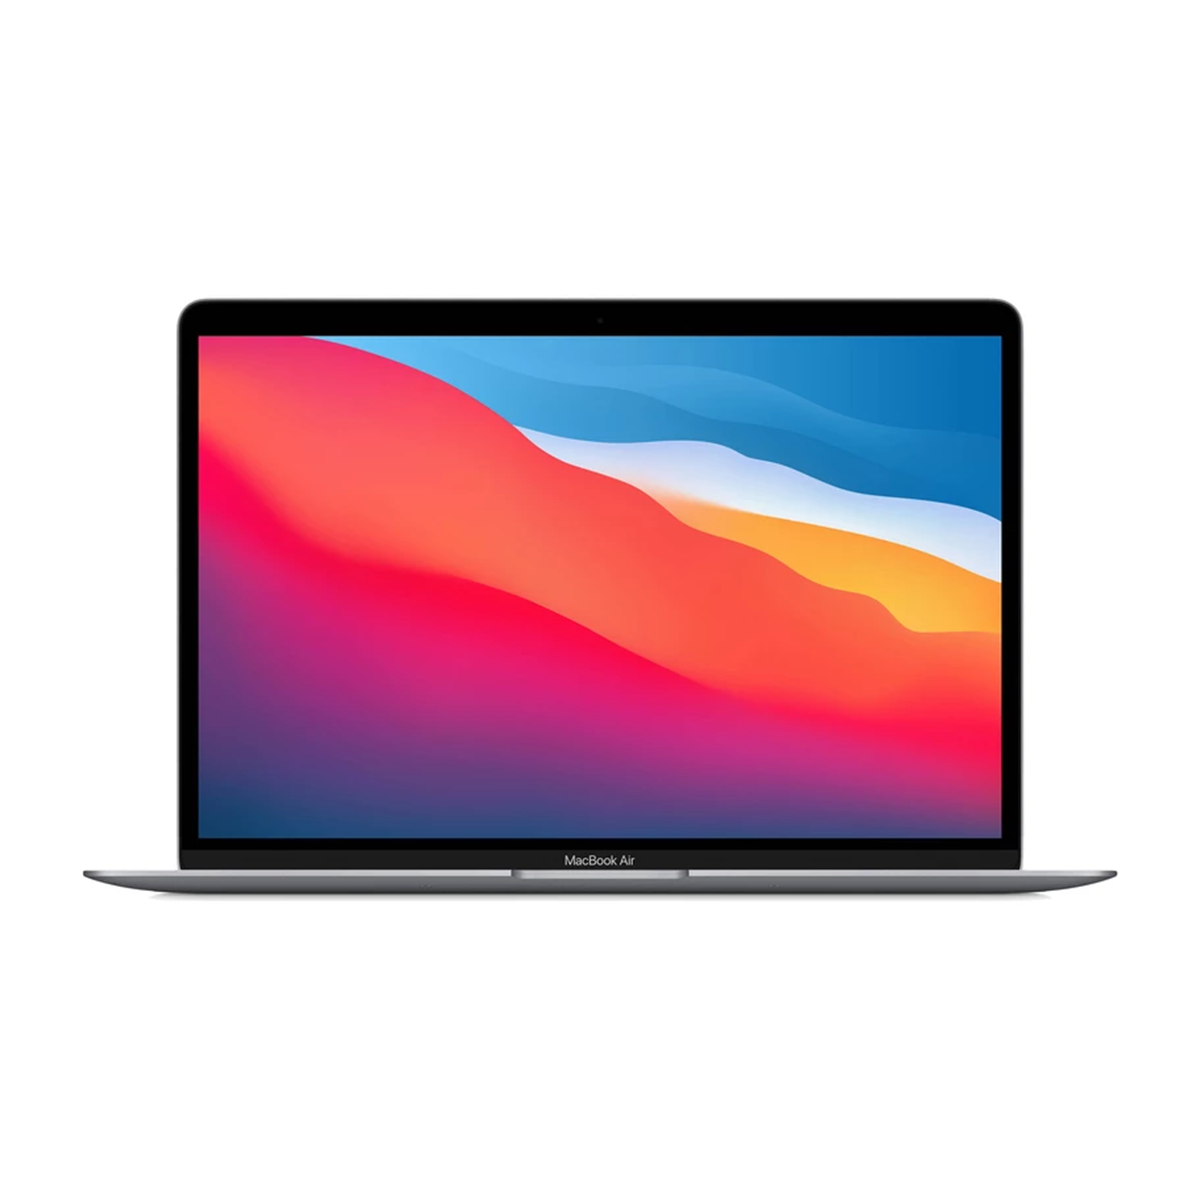  لپ تاپ 13 اینچی اپل مدل MacBook Air MGN63 2020-خاکستری